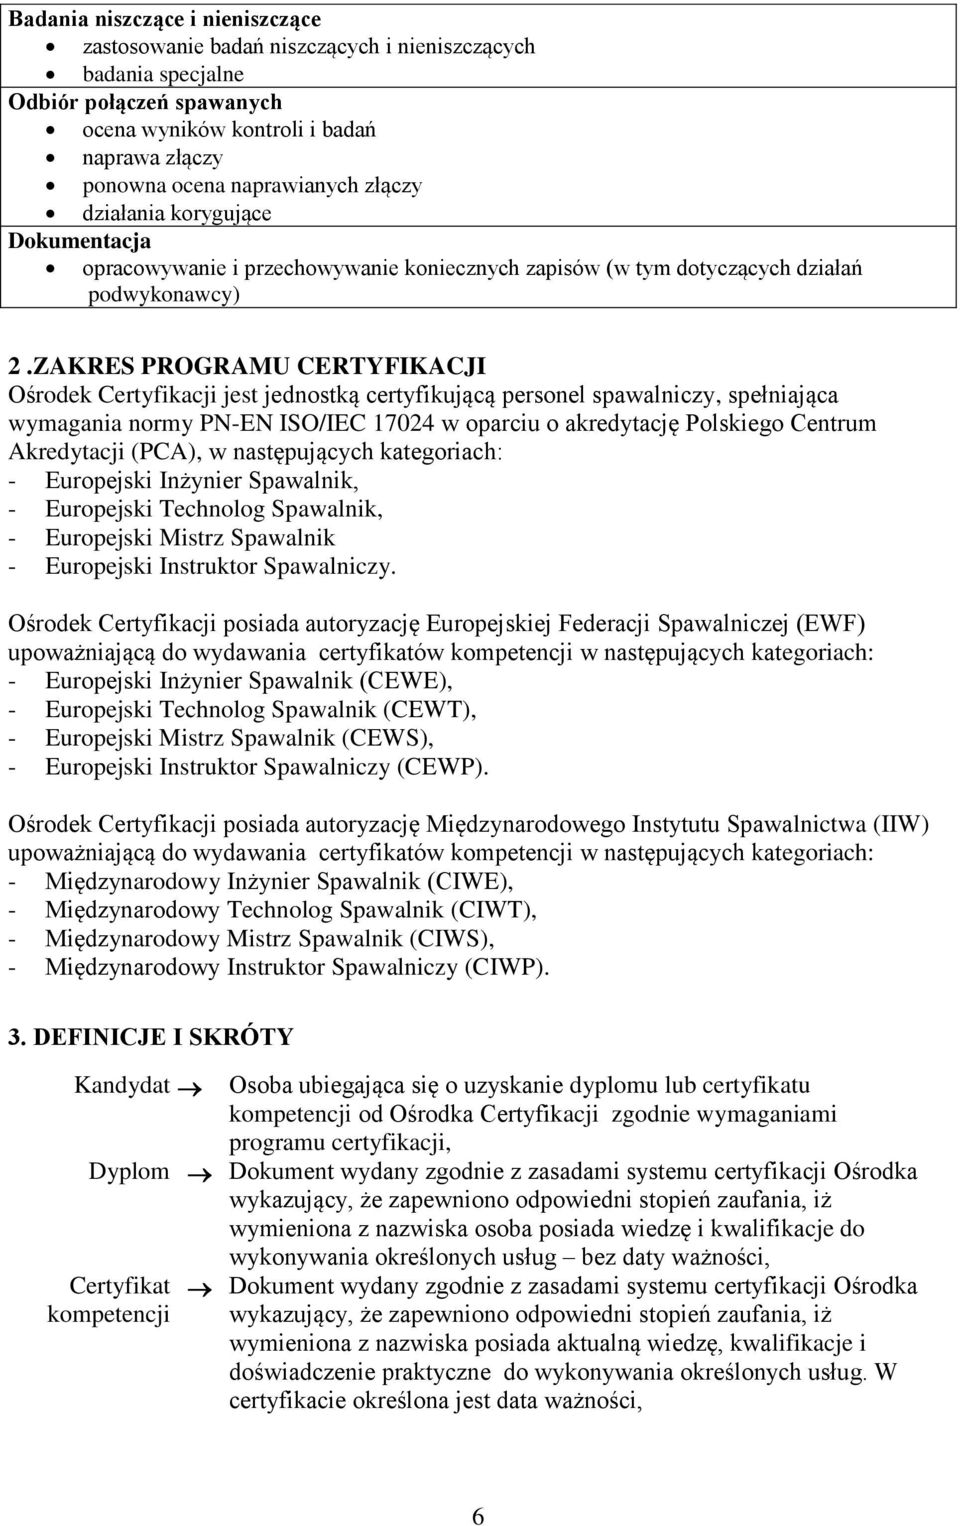 ZAKRES PROGRAMU CERTYFIKACJI Ośrodek Certyfikacji jest jednostką certyfikującą personel spawalniczy, spełniająca wymagania normy PN-EN ISO/IEC 17024 w oparciu o akredytację Polskiego Centrum